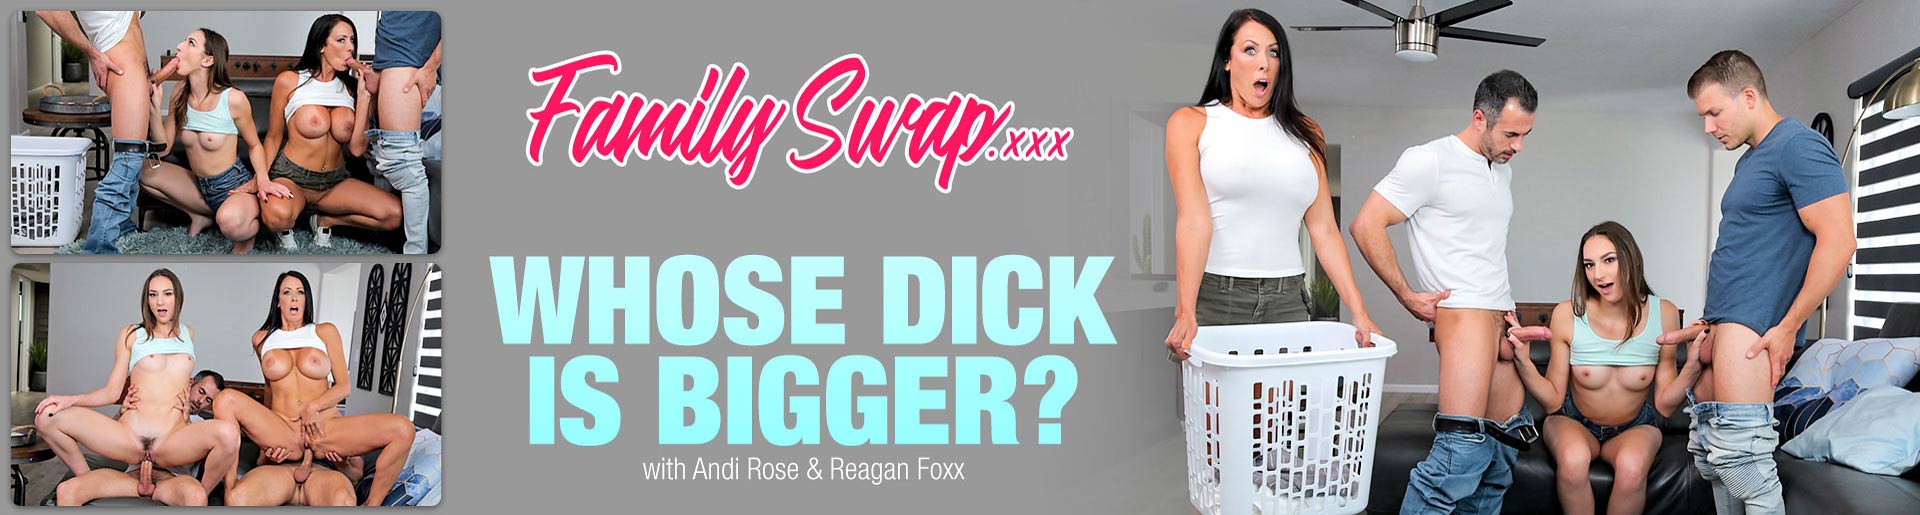 FamilySwap-Andi-Rose-Reagan-Foxx-Whose-Dick-is-Bigger